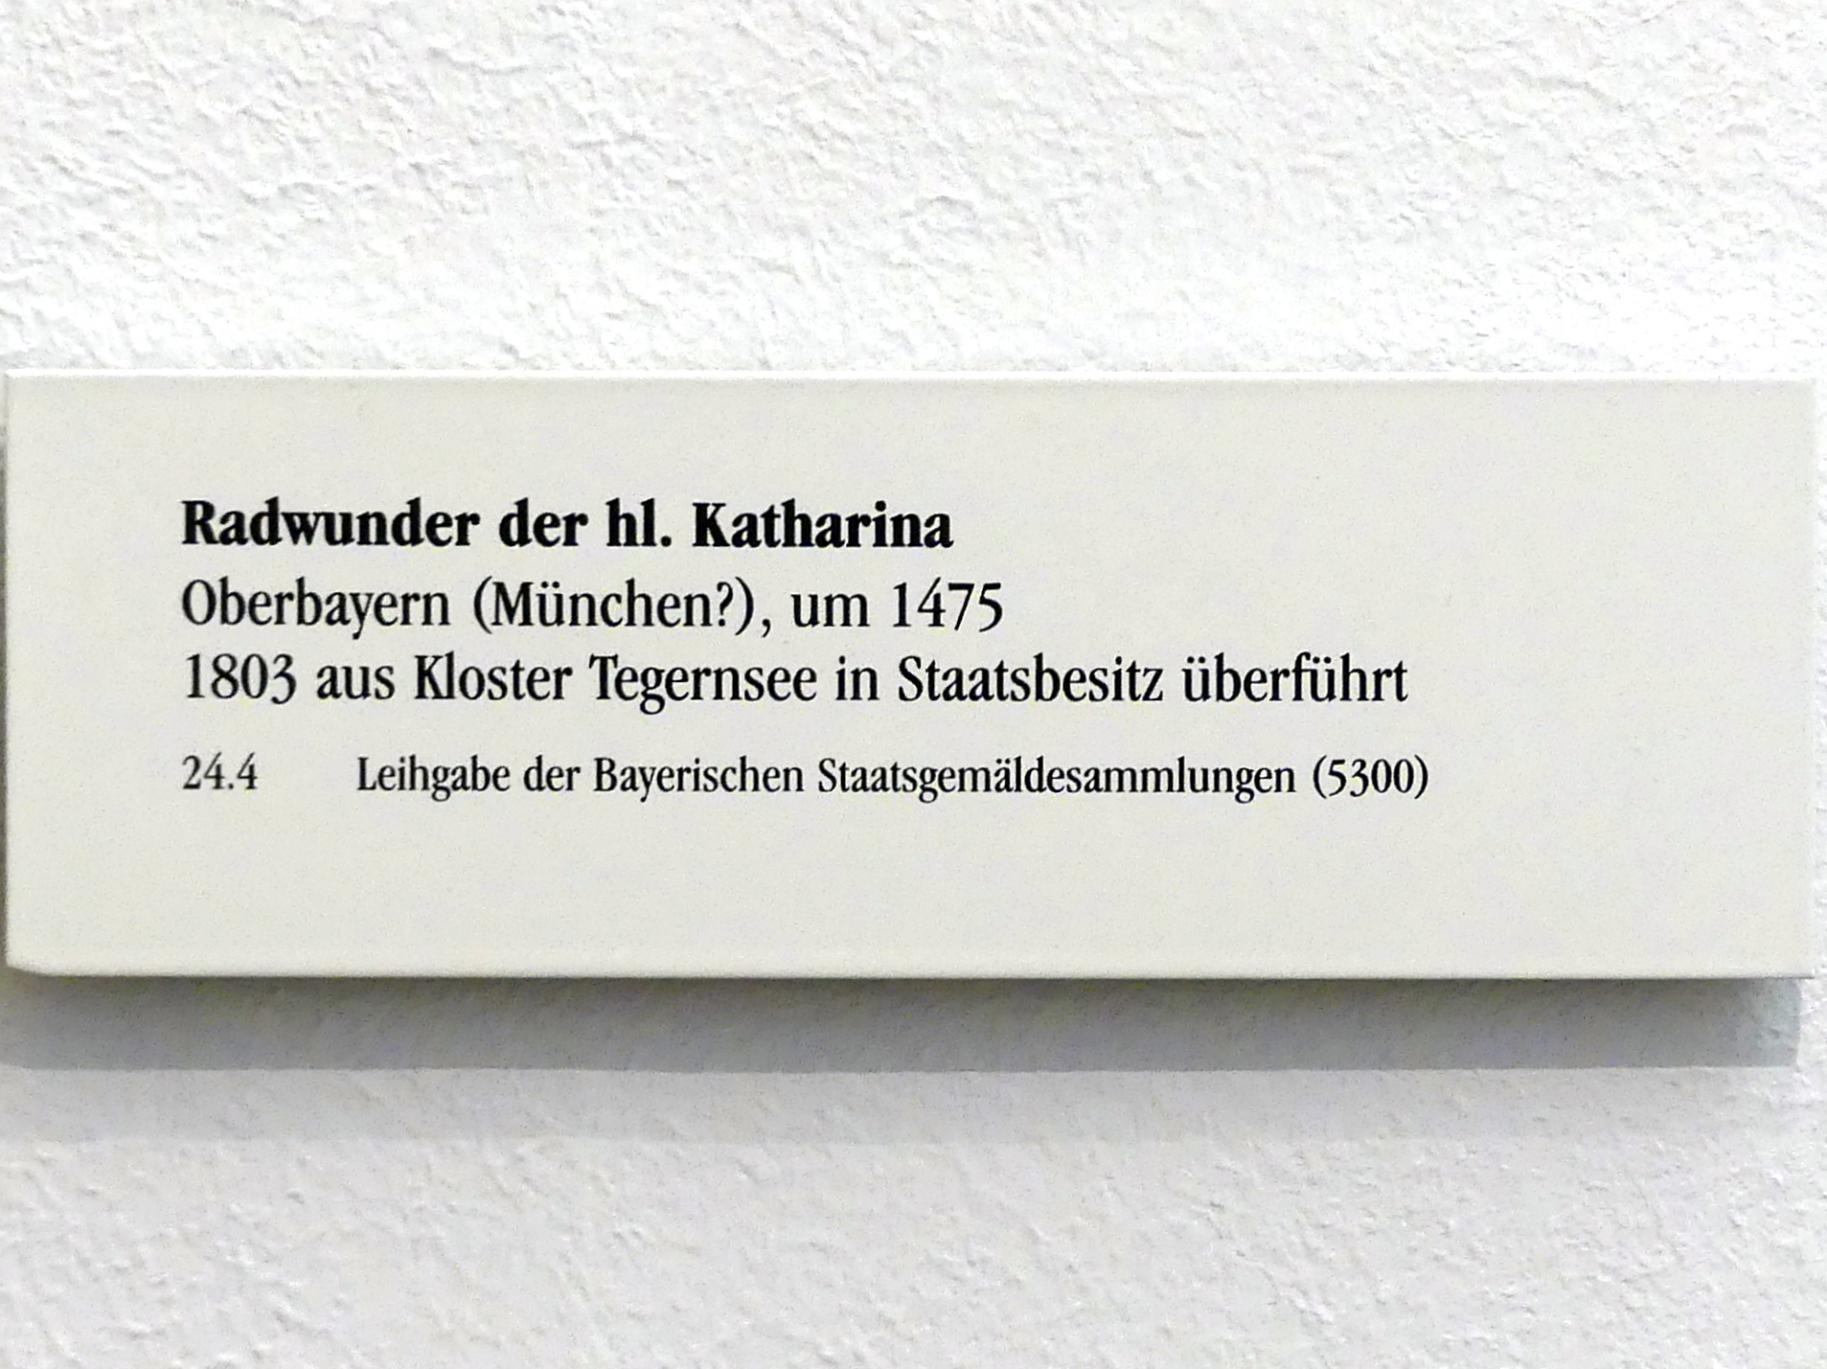 Radwunder der hl. Katharina, Tegernsee, ehemalige Benediktinerabtei, jetzt Regensburg, Historisches Museum, um 1475, Bild 2/2